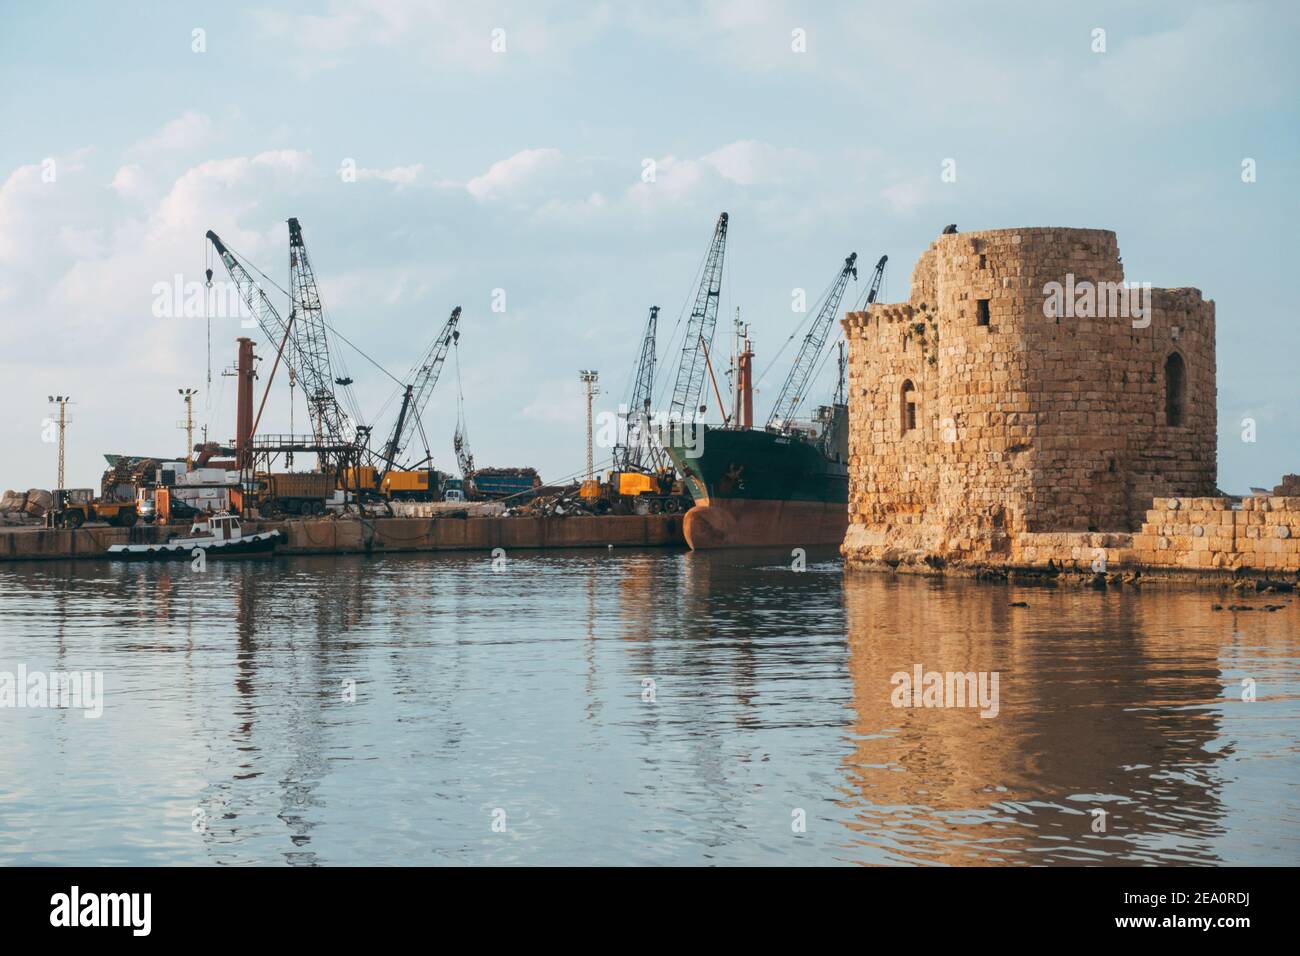 Un navire de déchets se charge derrière le château de la mer de Sidon à Sidon, au Liban Banque D'Images